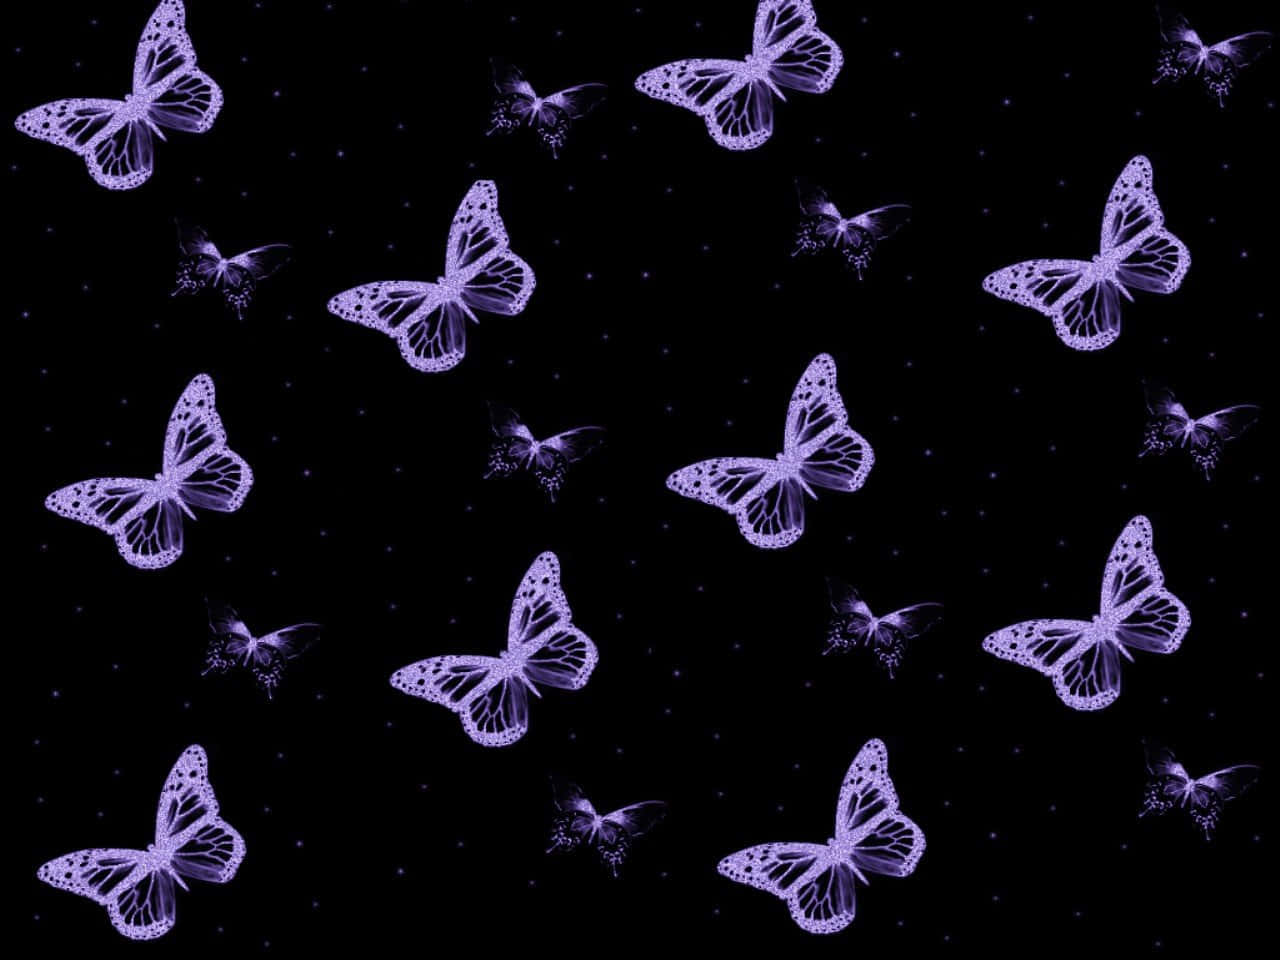 Purple Butterflies On A Black Background